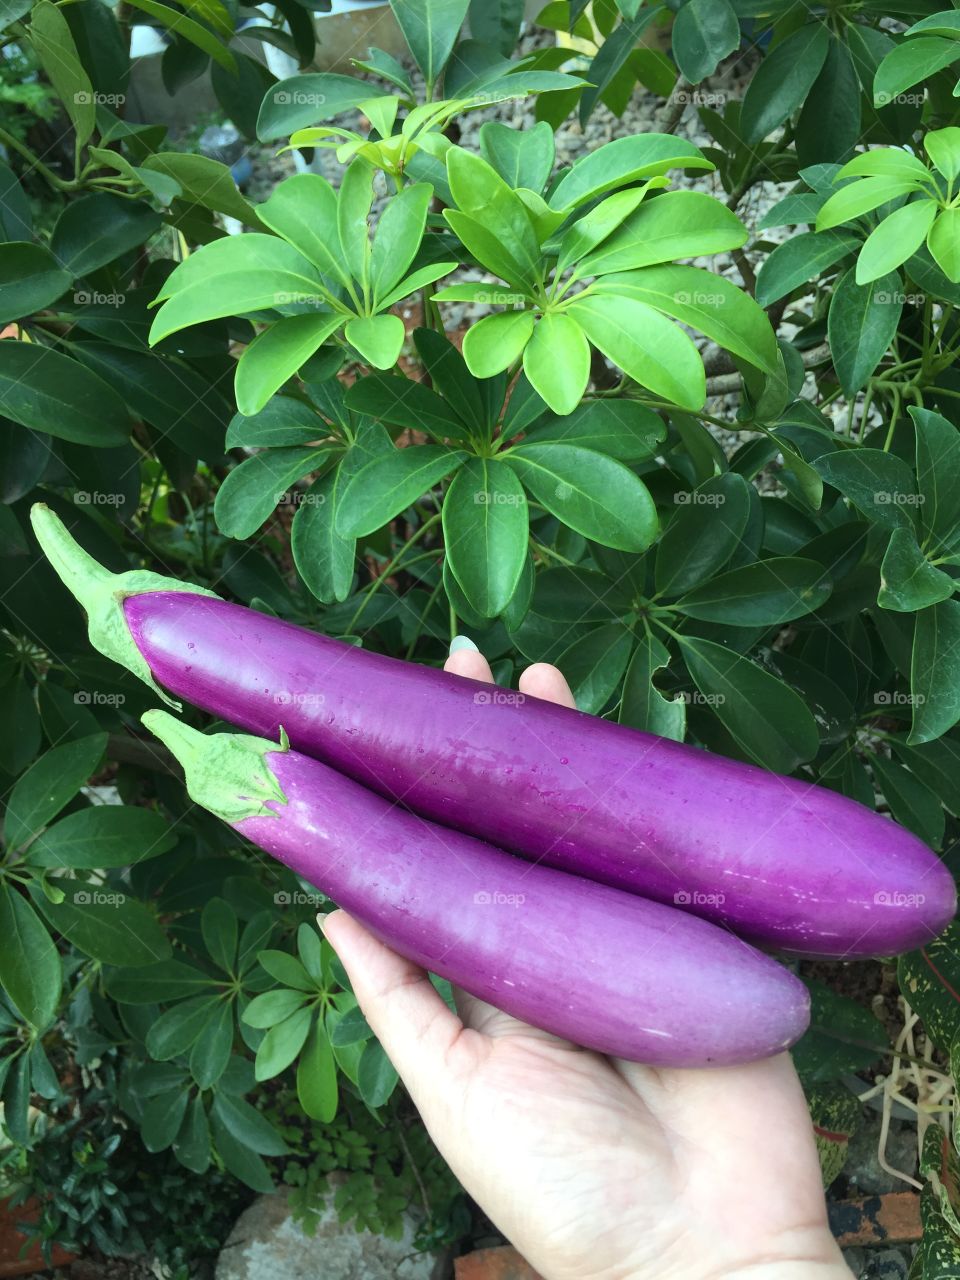 eggplants 